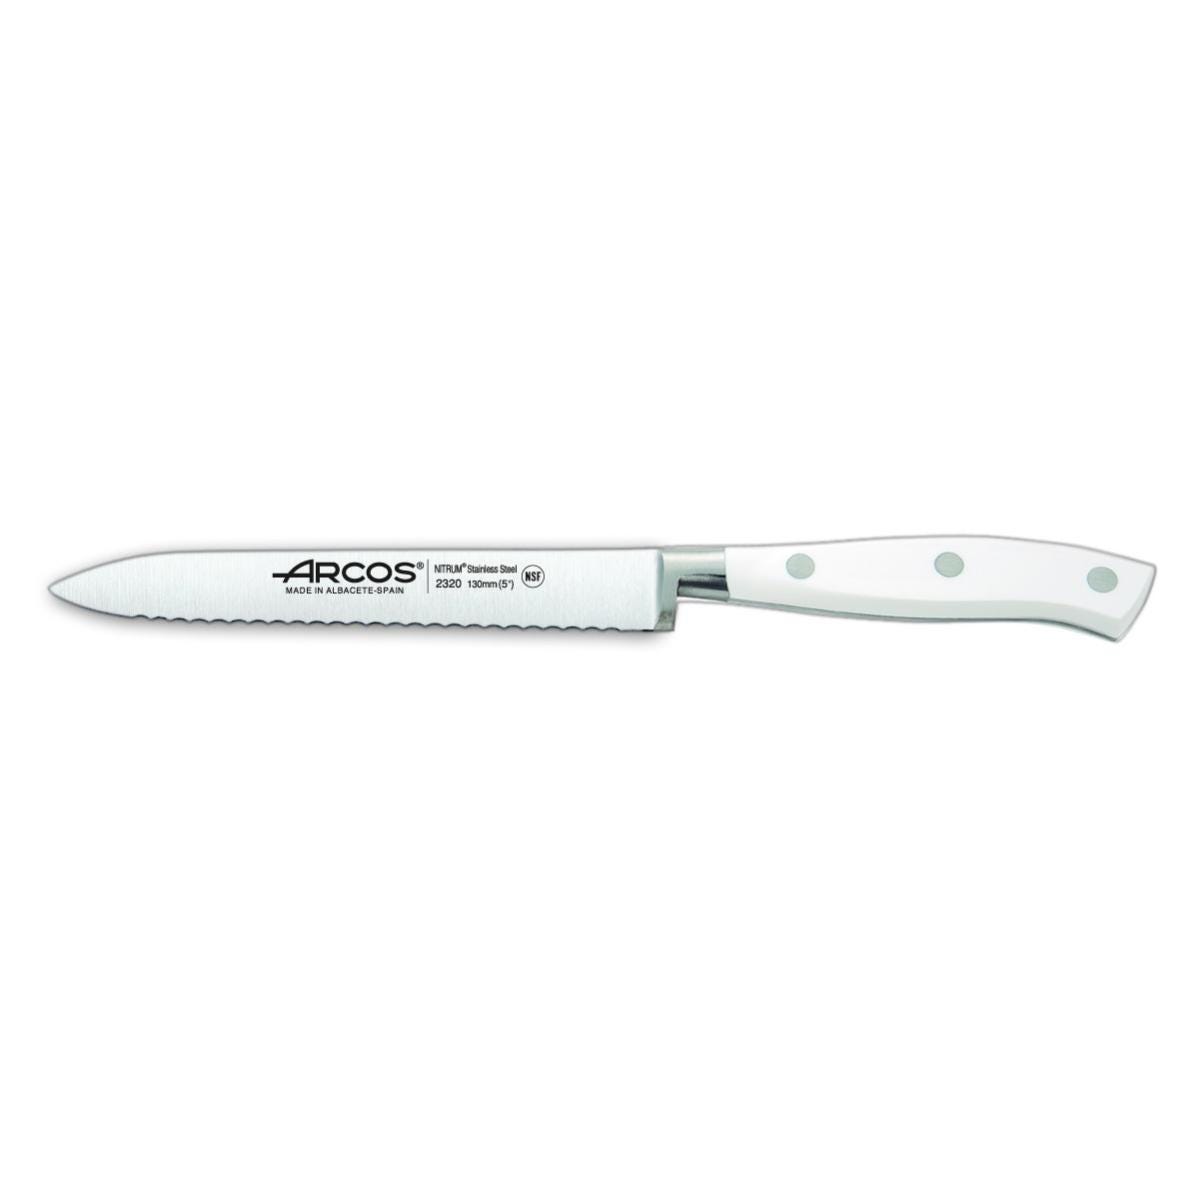 Comprar cuchillos profesionales santoku serie Riviera Blanc de Arcos